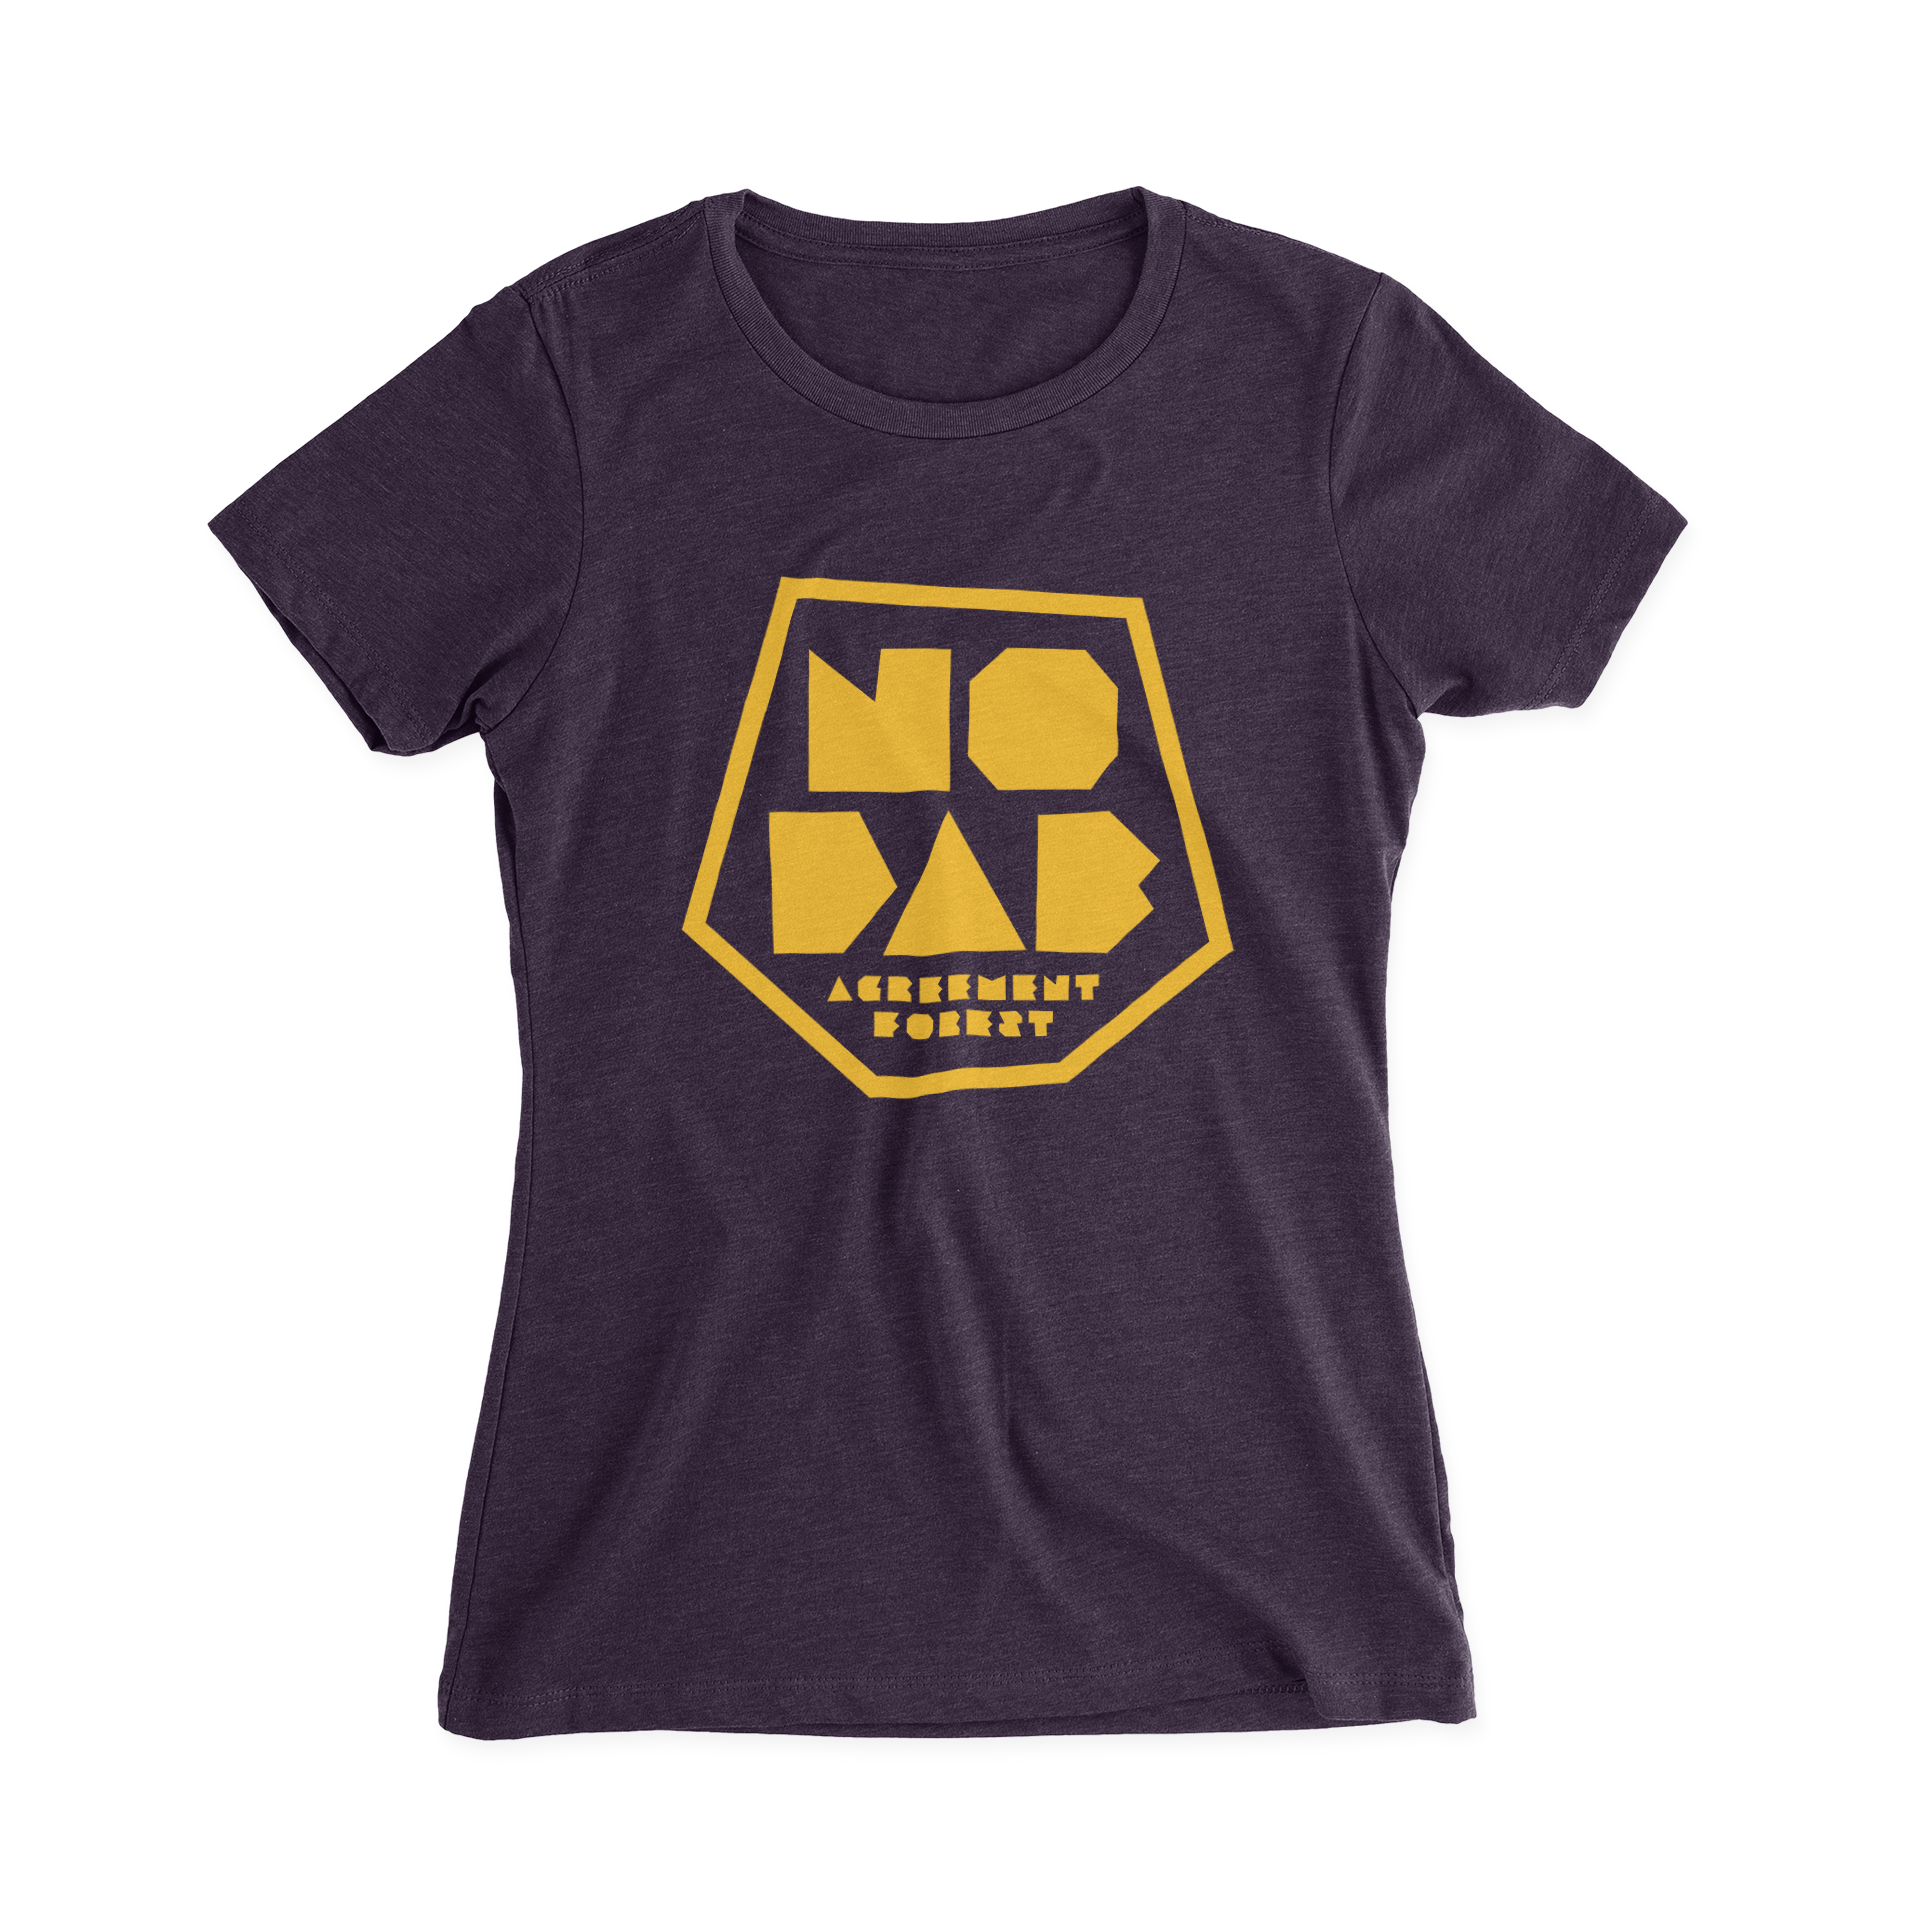 Women's No Dab T-Shirt